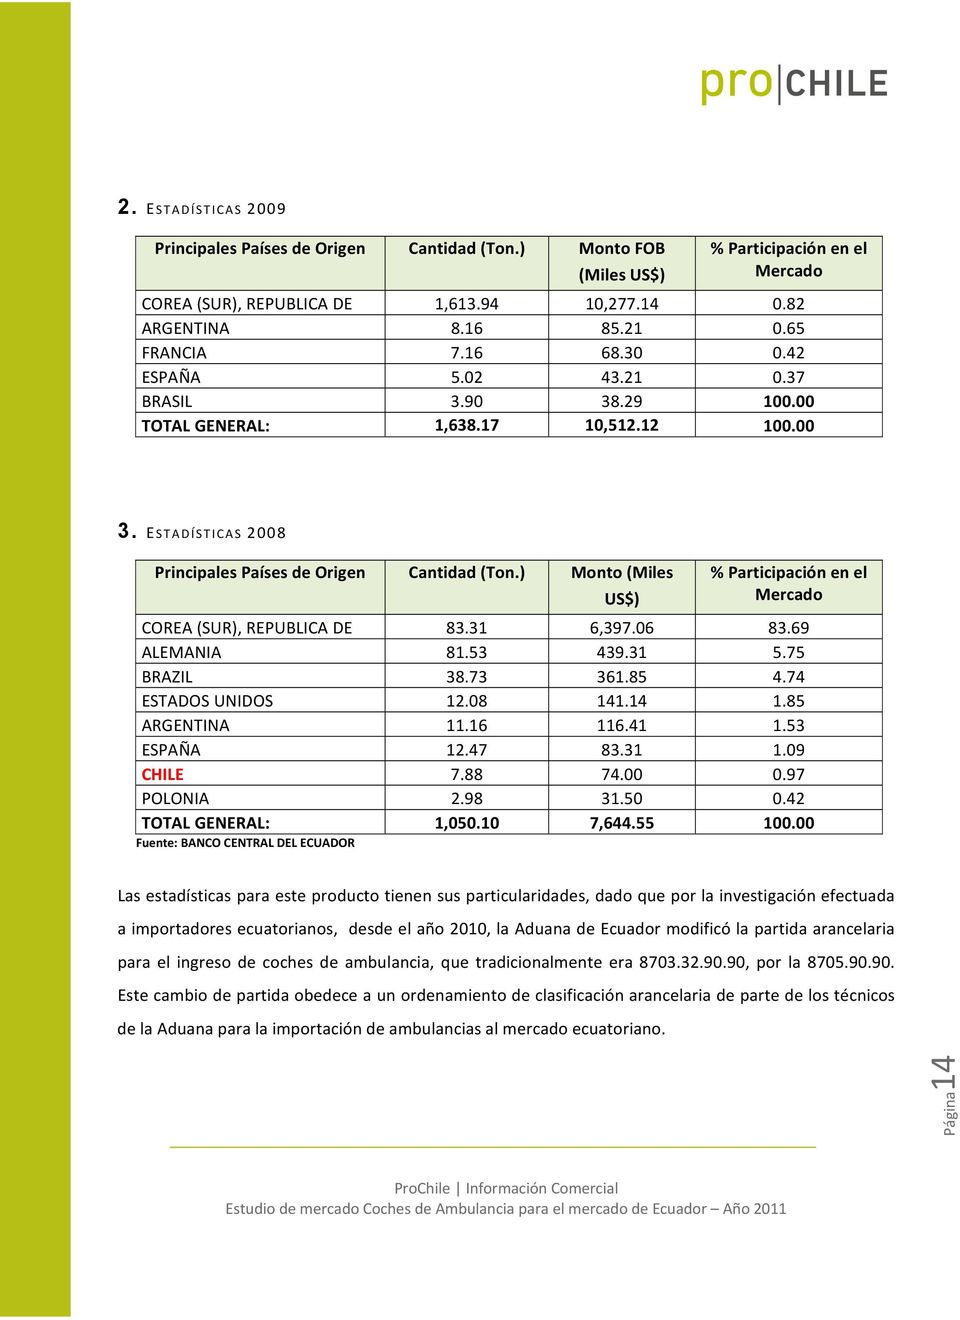 ) Monto (Miles US$) % Participación en el Mercado COREA (SUR), REPUBLICA DE 83.31 6,397.06 83.69 ALEMANIA 81.53 439.31 5.75 BRAZIL 38.73 361.85 4.74 ESTADOS UNIDOS 12.08 141.14 1.85 ARGENTINA 11.